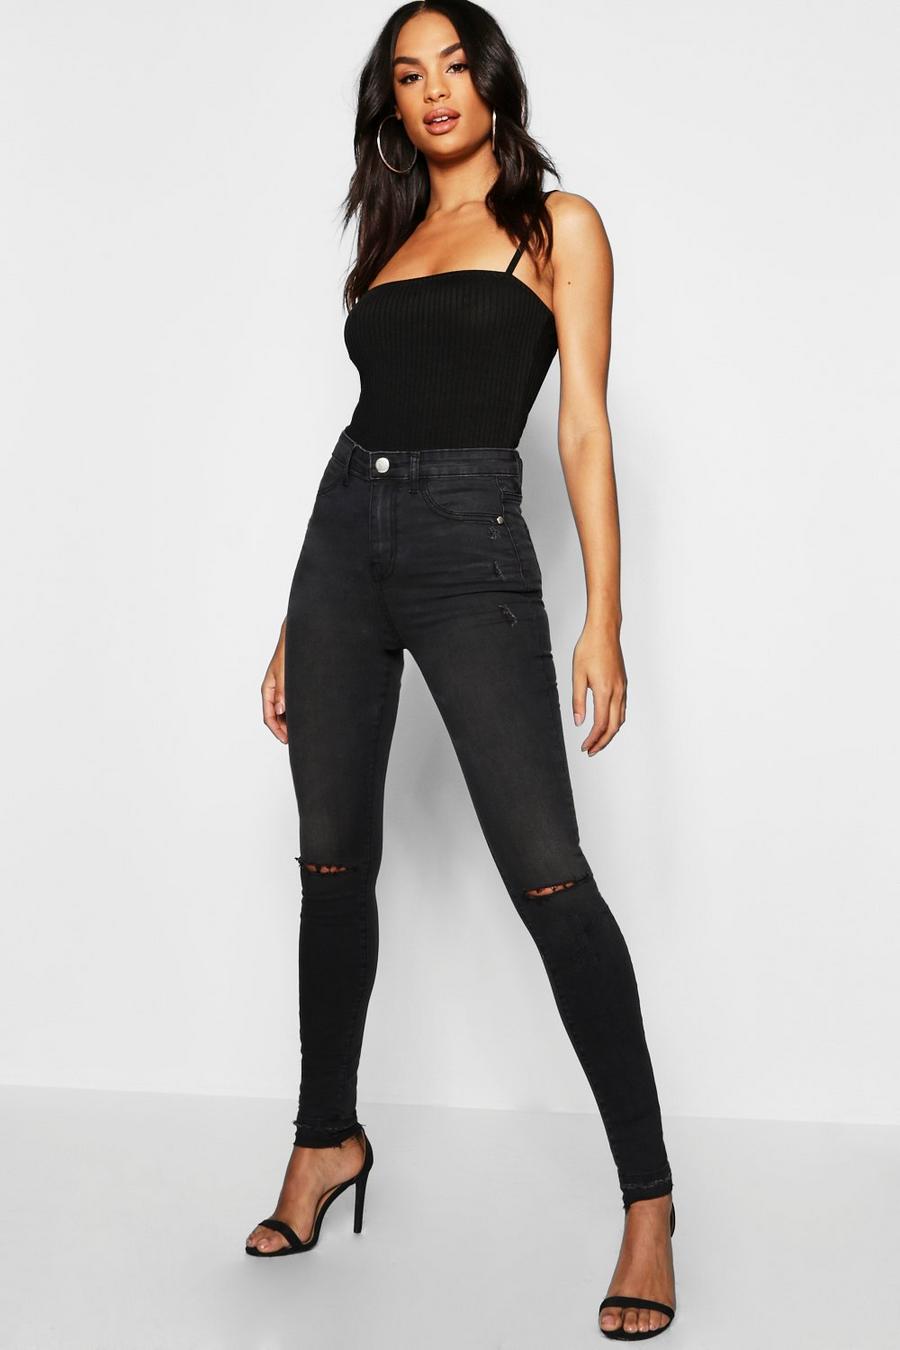 שחור טייץ ג'ינס עם קרע בברך לנשים גבוהות image number 1